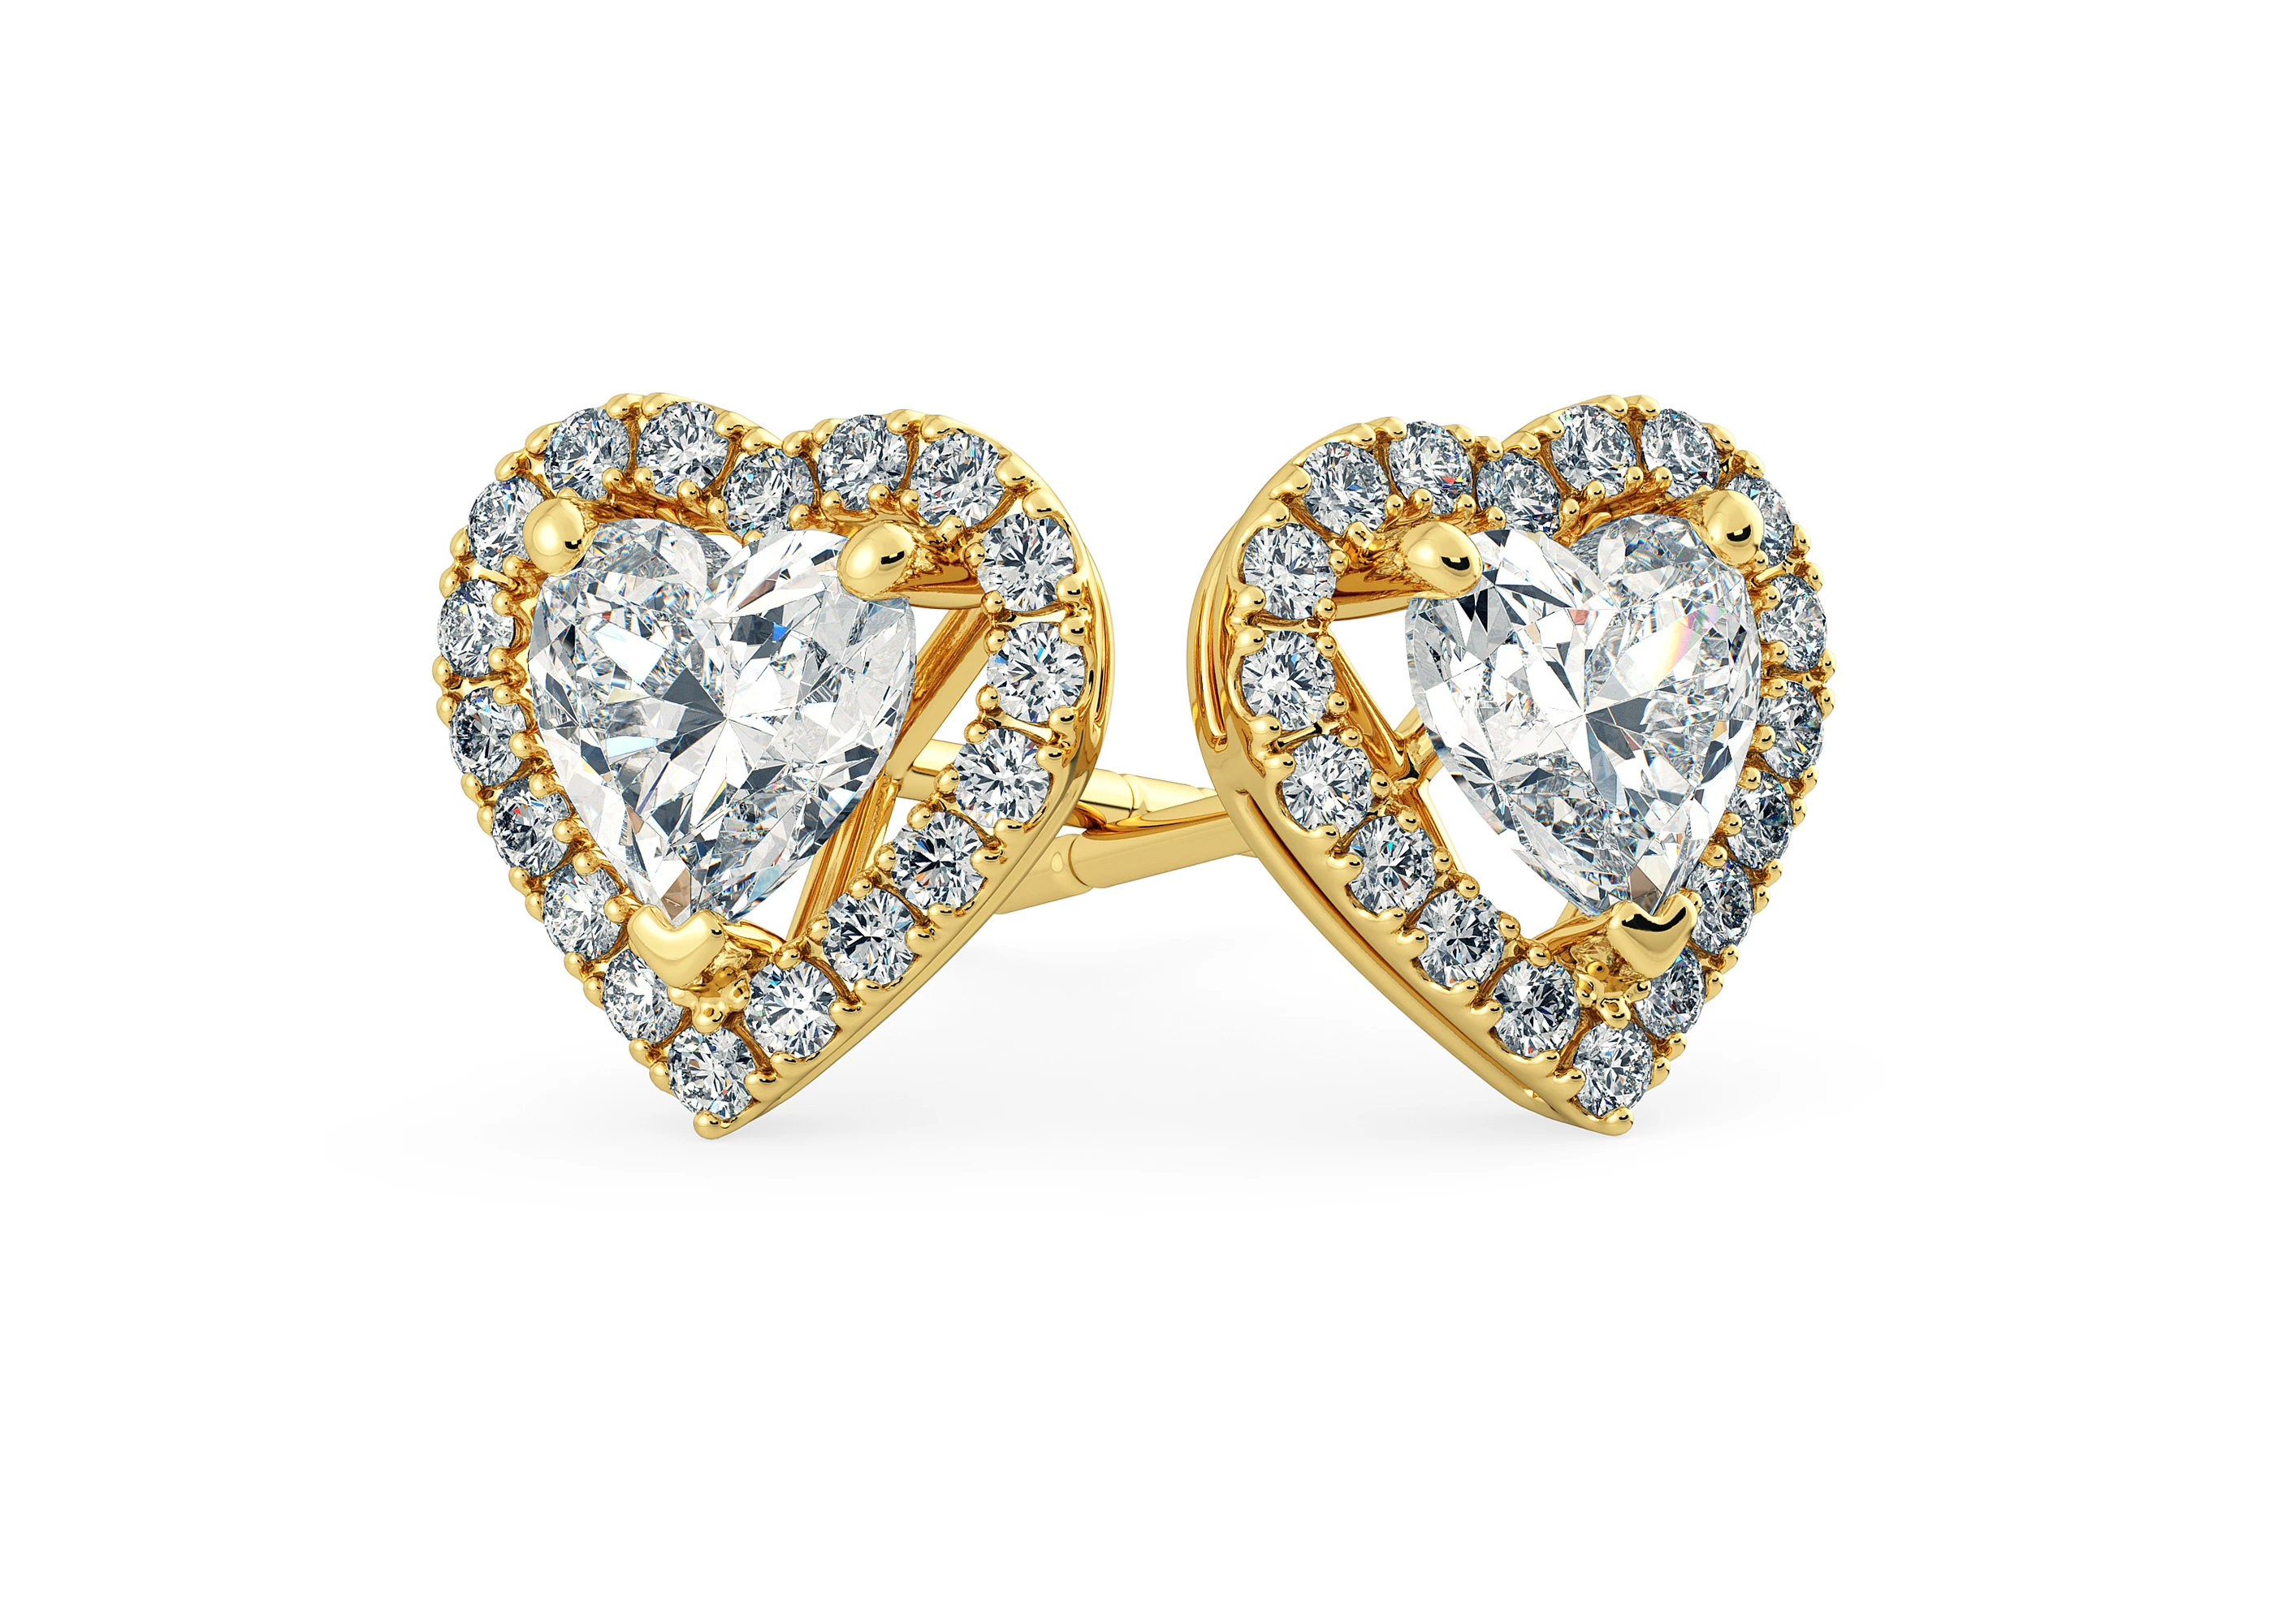 Bijou Heart Diamond Stud Earrings in 18K Yellow Gold with Butterfly Backs